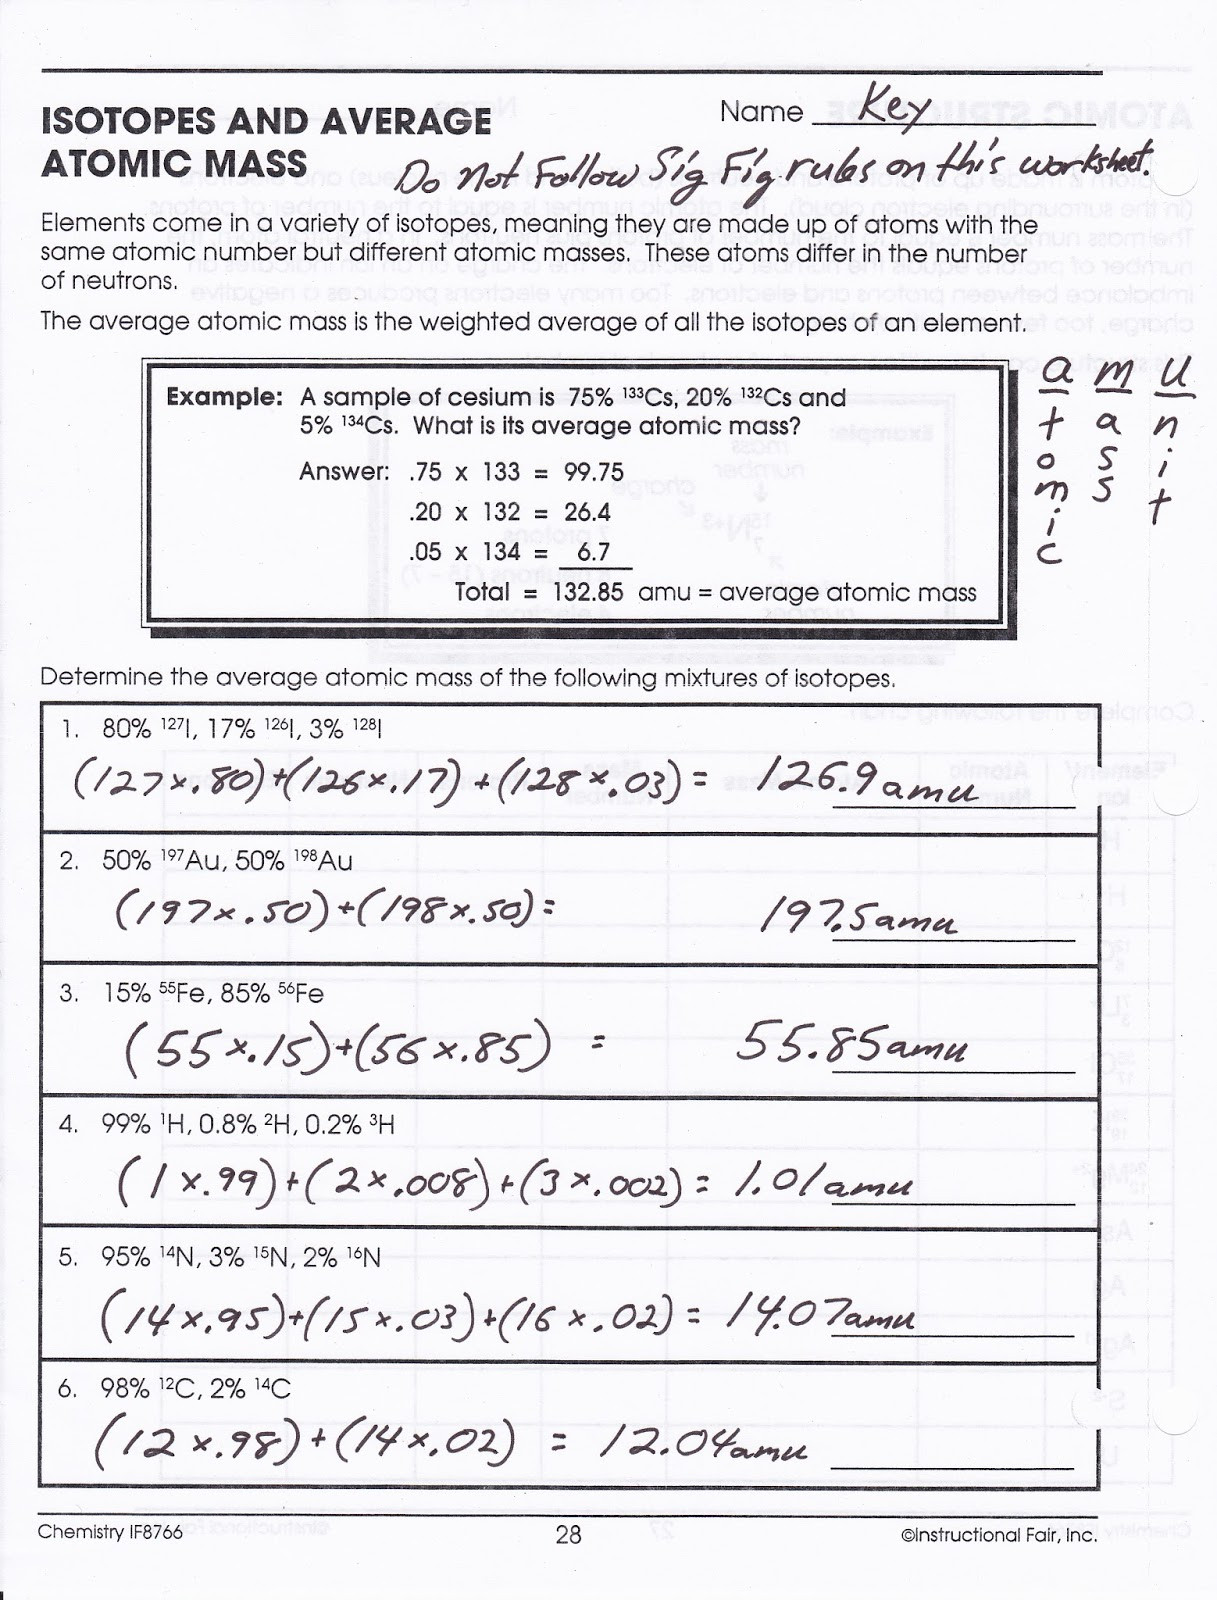 Average atomic Mass Worksheet Calculating atomic Mass Worksheet